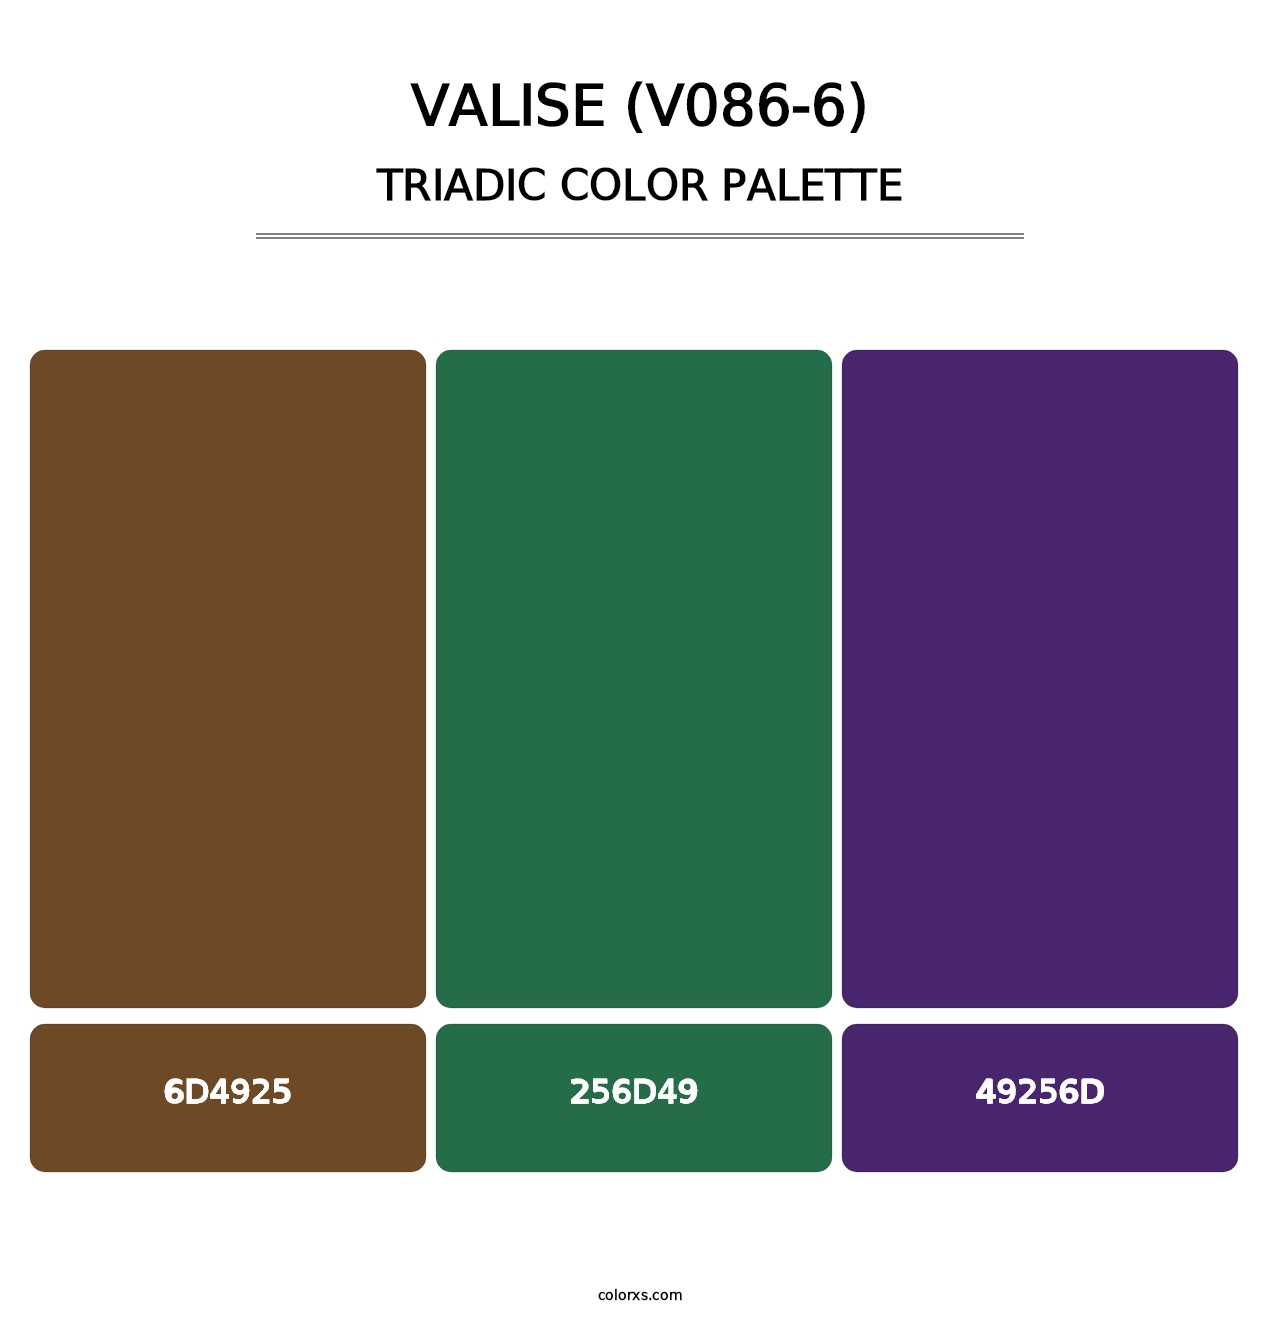 Valise (V086-6) - Triadic Color Palette